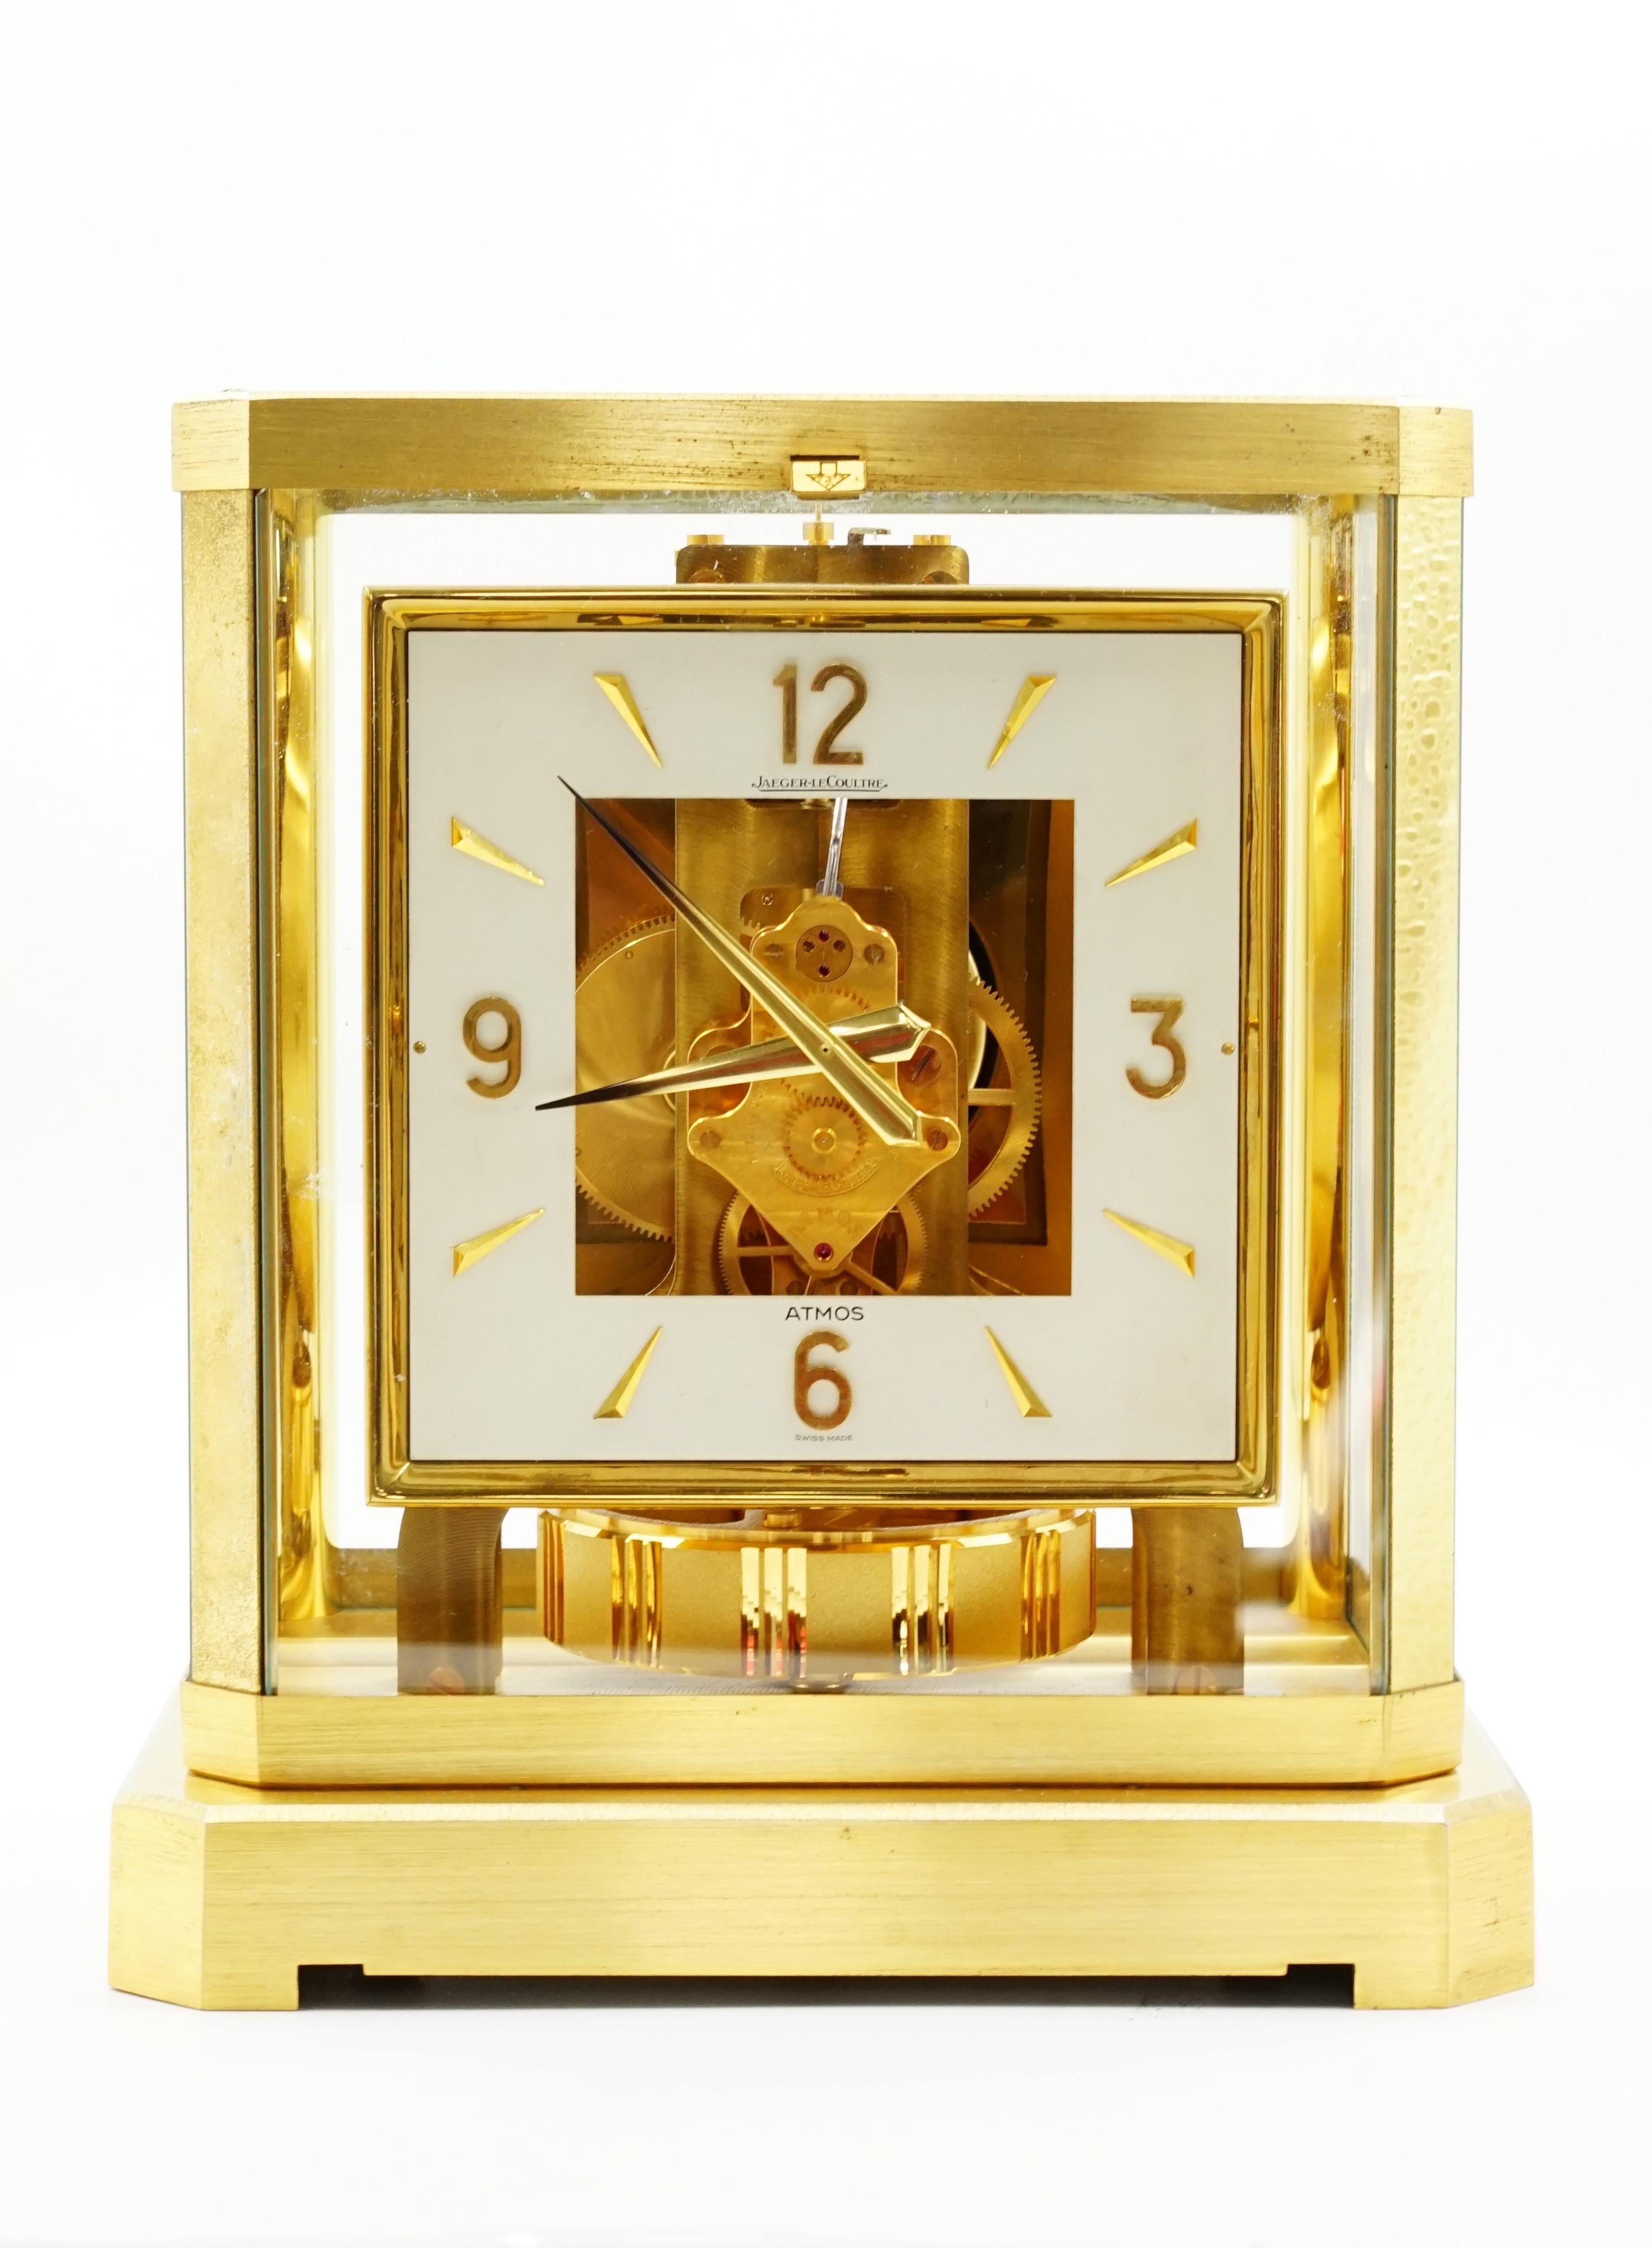 Montre Jaeger-LeCoultre Atmos
Atmos VI
Horloge de table Elle fonctionne correctement. mouvement perpétuel
Il s'agit du calibre 528 (1958-1968).
Le cadran est carré
MATERIAL Bronze et verre
La patine est dorée et présente une légère usure